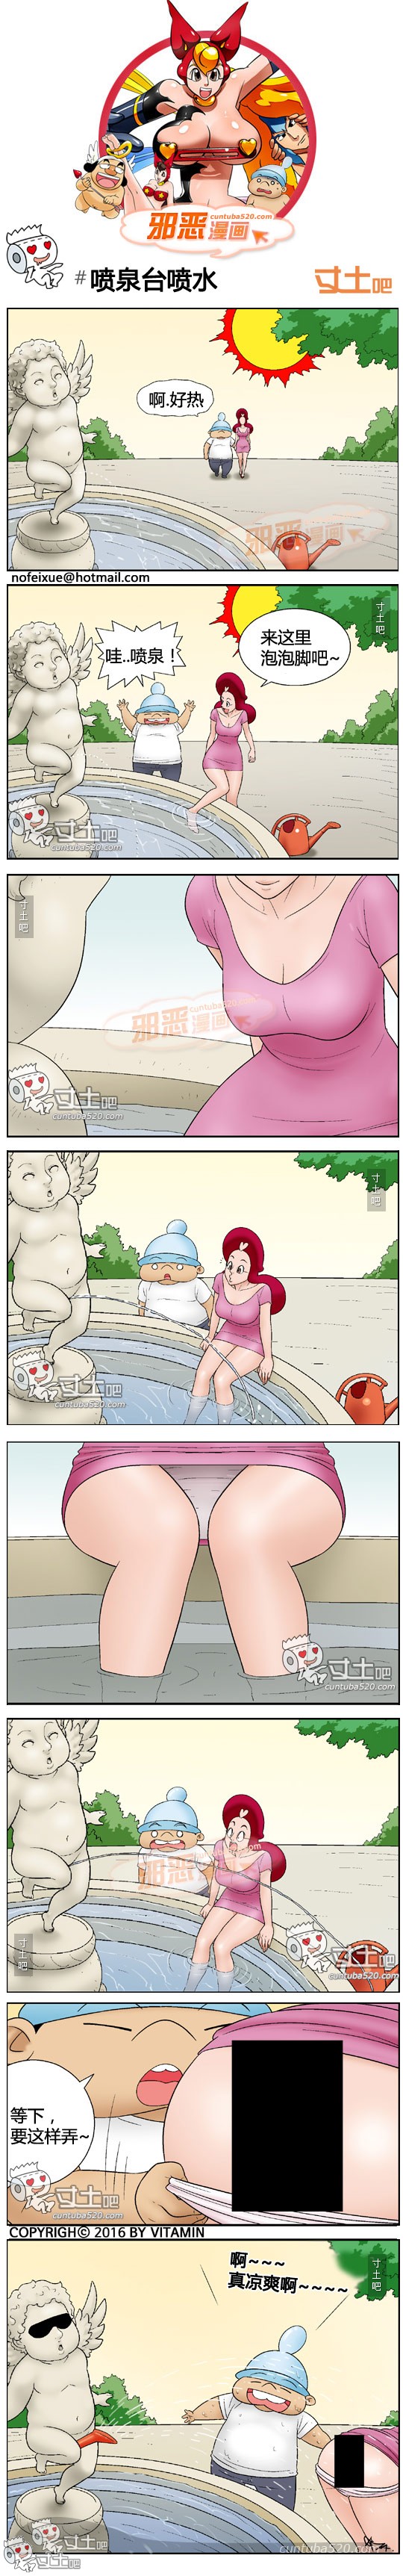 里番本子邪恶漫画:喷泉台喷水